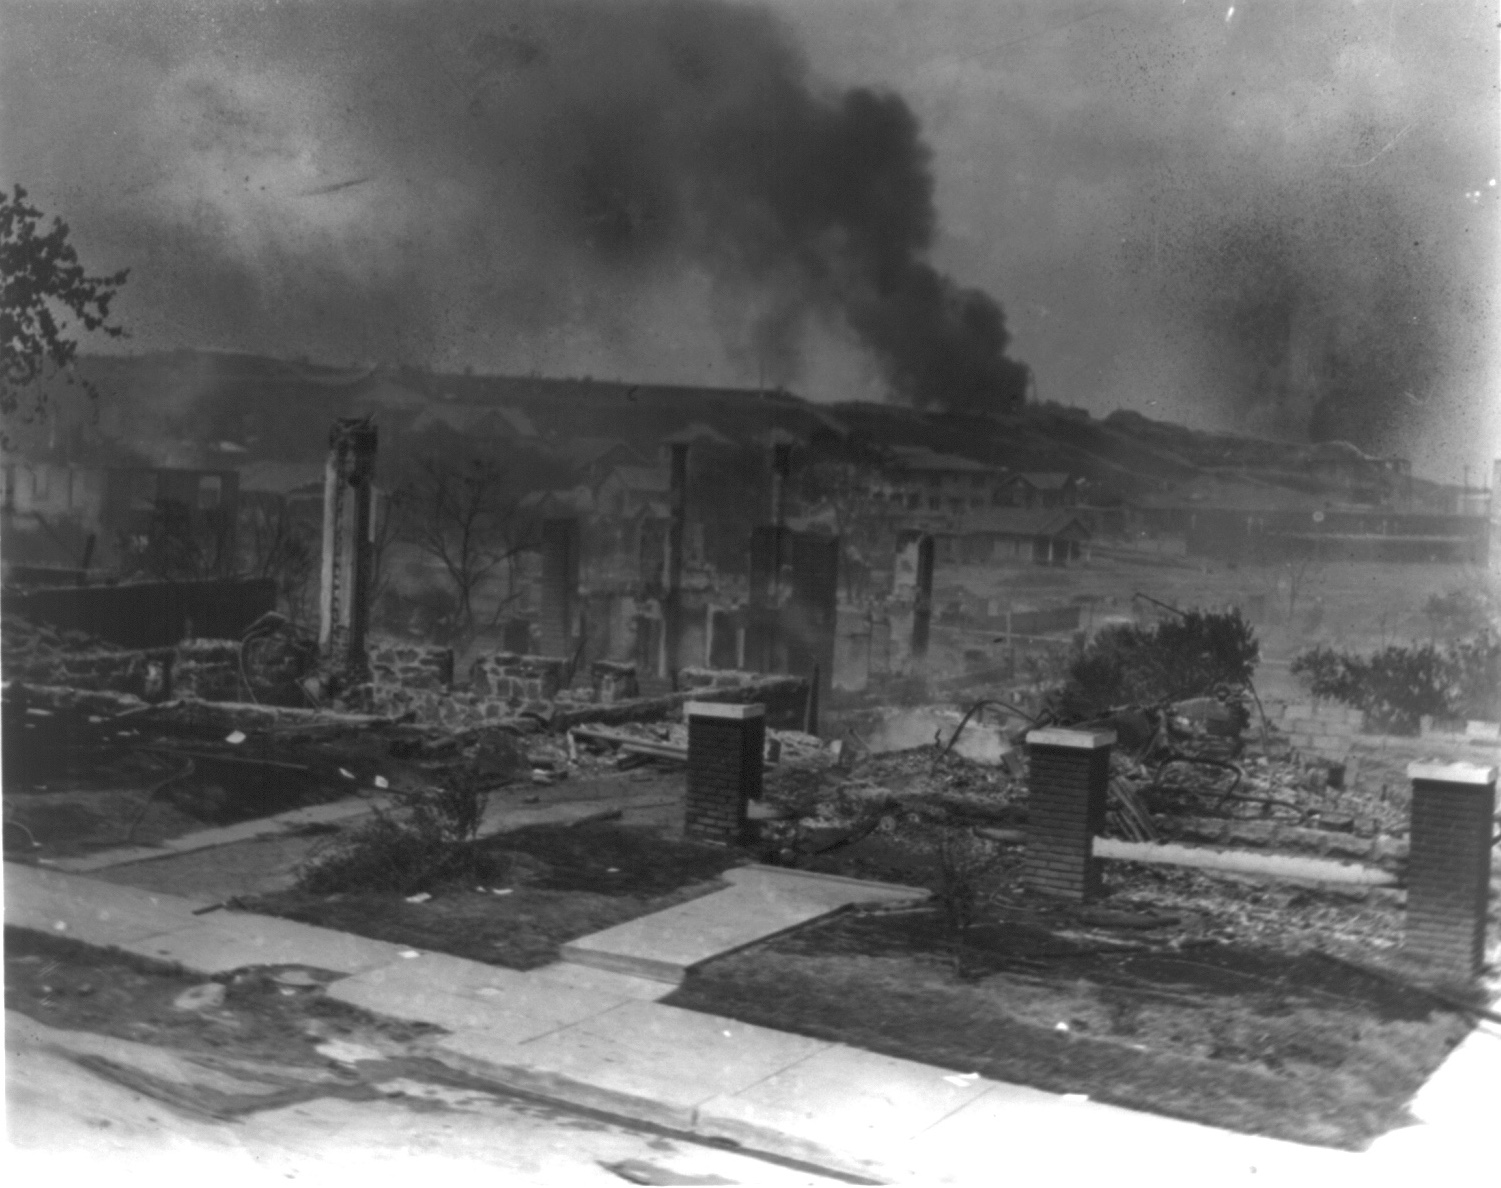 La storia della strage “dimenticata” di Tulsa, in Oklahoma, 100 anni fa